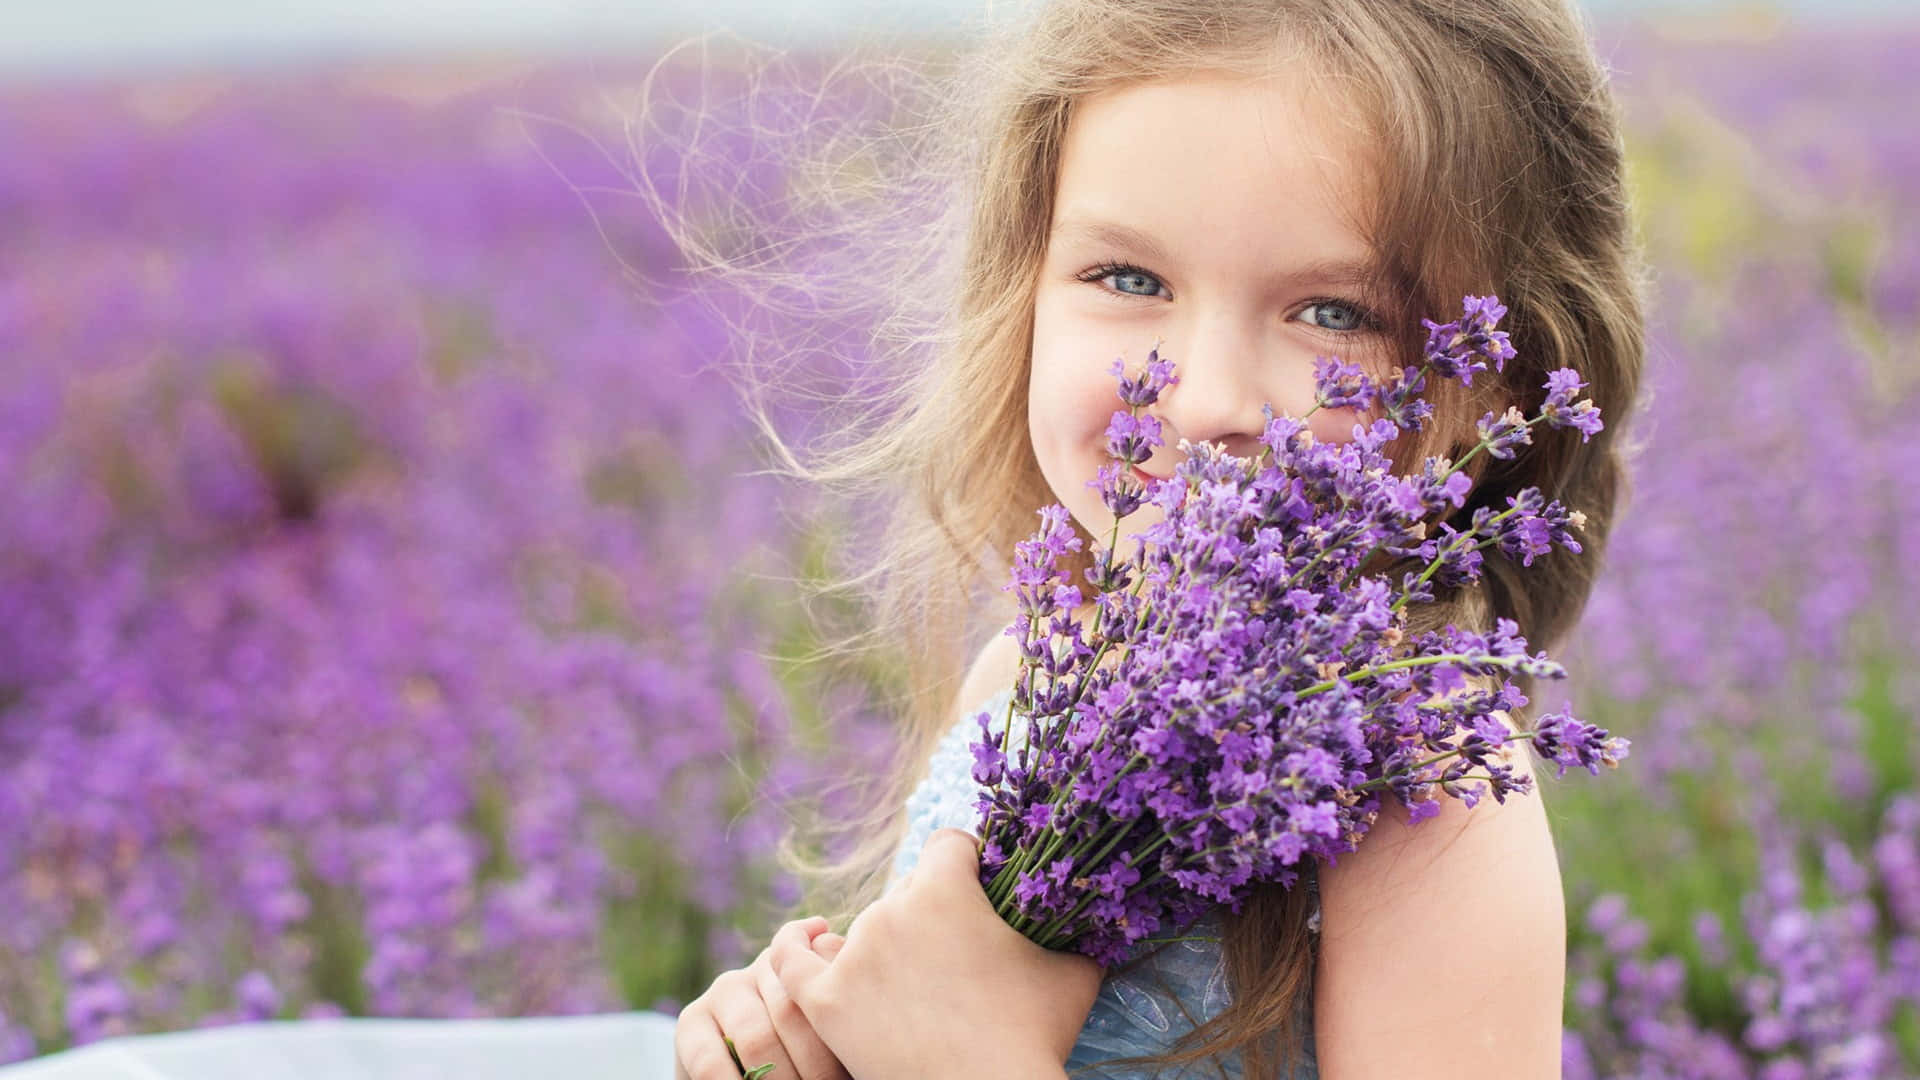 Girlin Lavender Field Holding Flowers.jpg Wallpaper